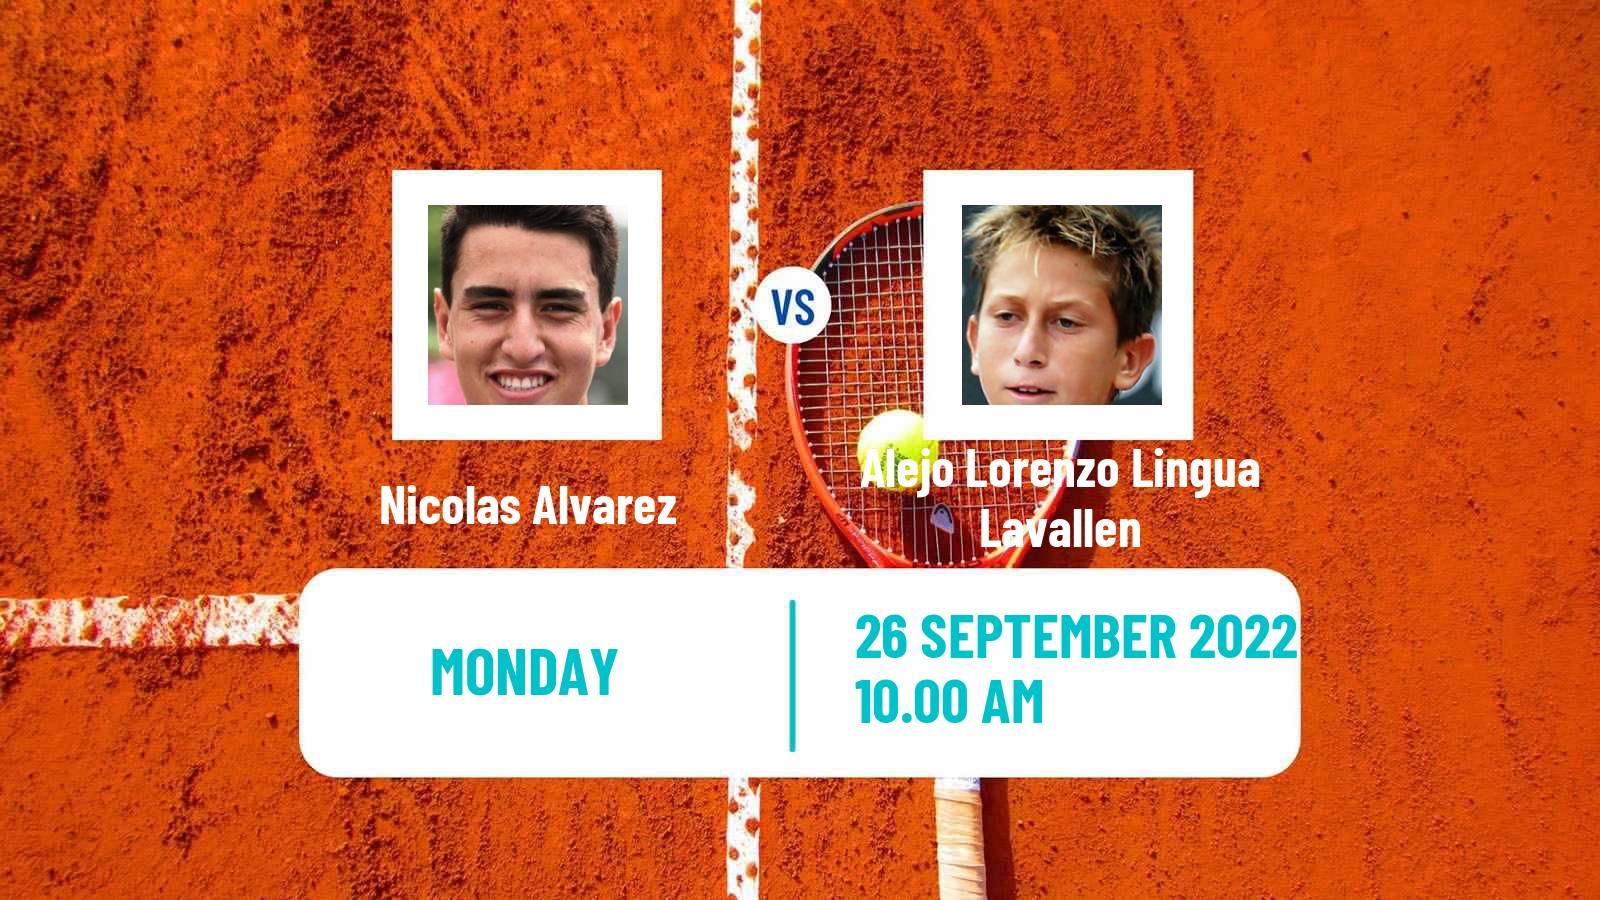 Tennis ATP Challenger Nicolas Alvarez - Alejo Lorenzo Lingua Lavallen